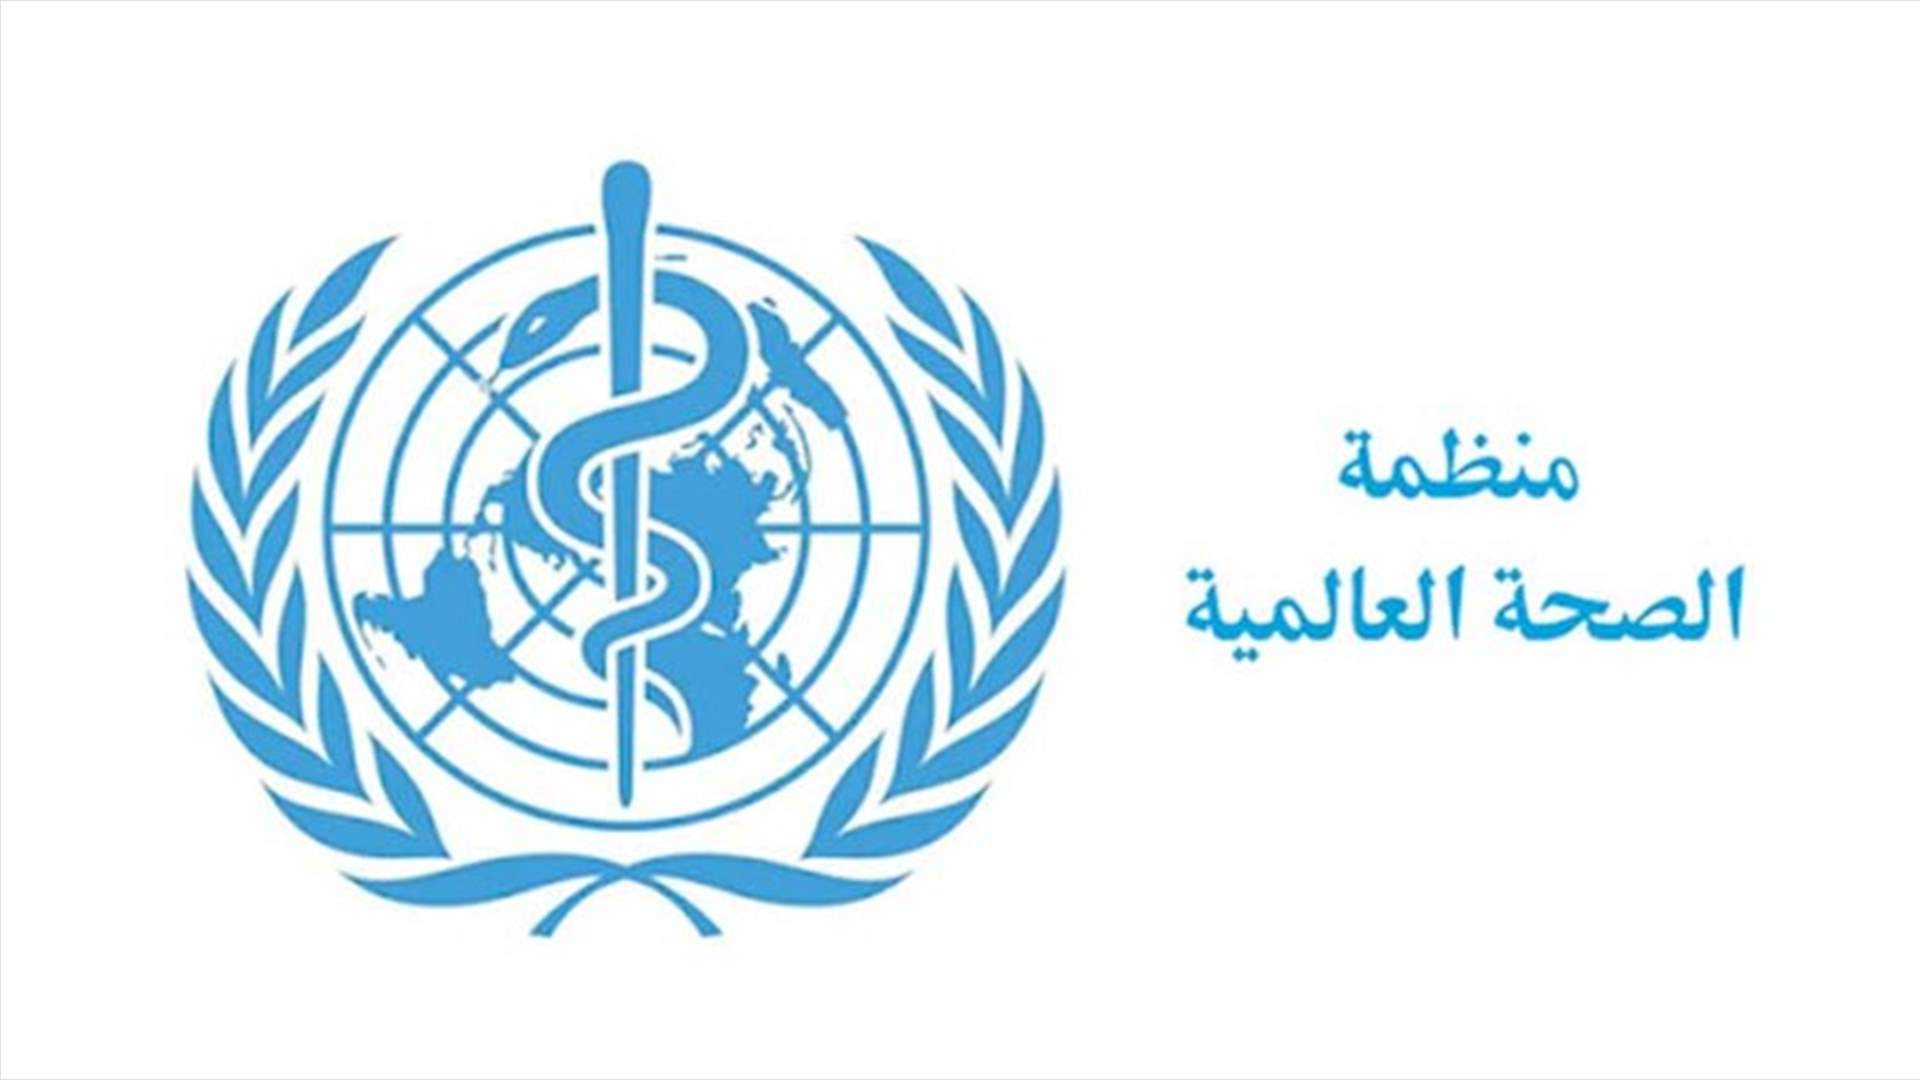 منظمة الصحة: 77 ألف إصابة و4 آلاف وفاة... الفرصة لا تزال سانحة لإحتواء فيروس كورونا في الشرق الأوسط